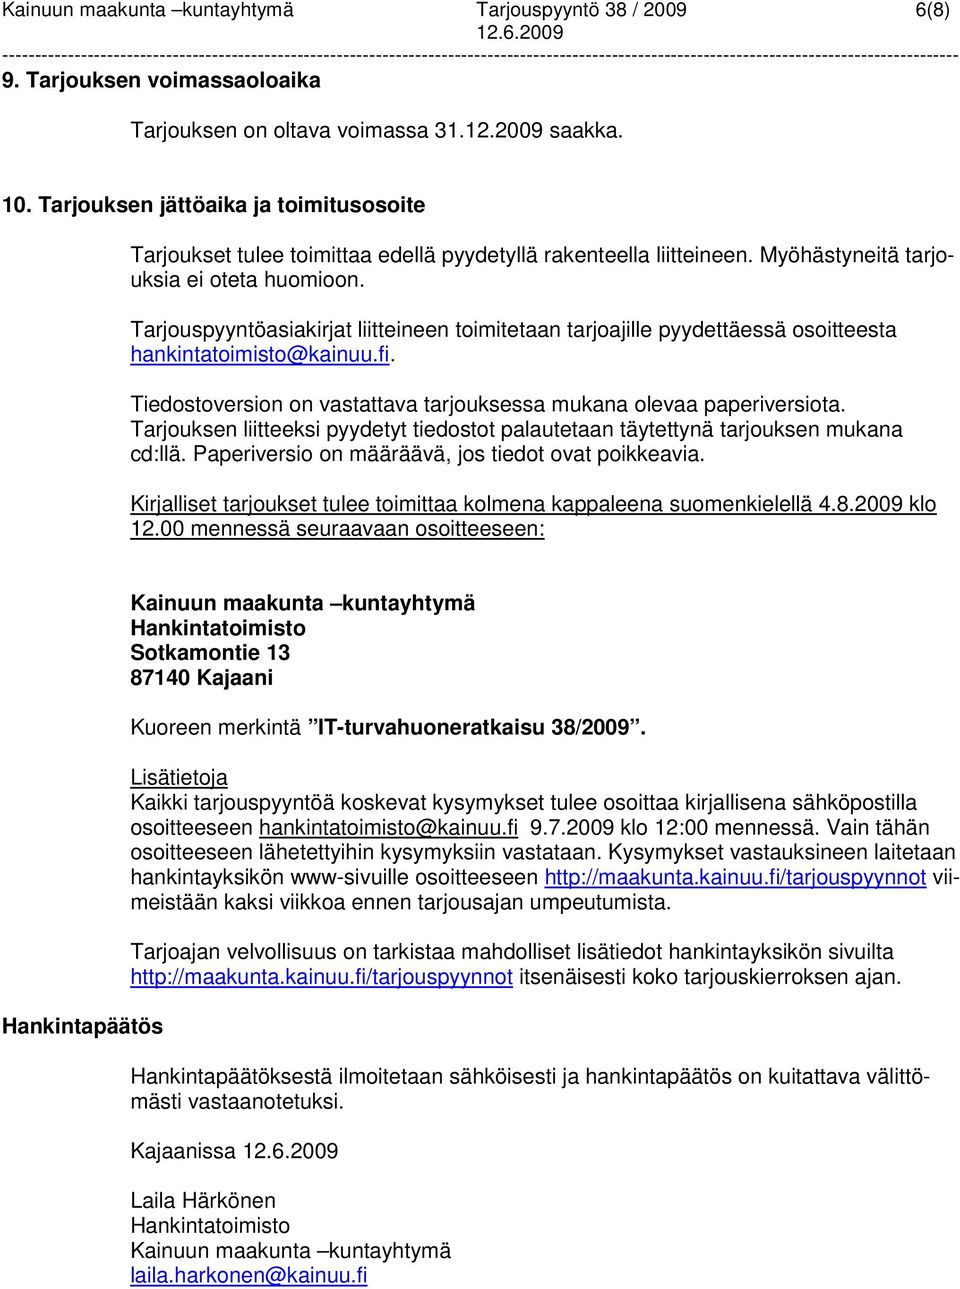 Tarjouspyyntöasiakirjat liitteineen toimitetaan tarjoajille pyydettäessä osoitteesta hankintatoimisto@kainuu.fi. Tiedostoversion on vastattava tarjouksessa mukana olevaa paperiversiota.